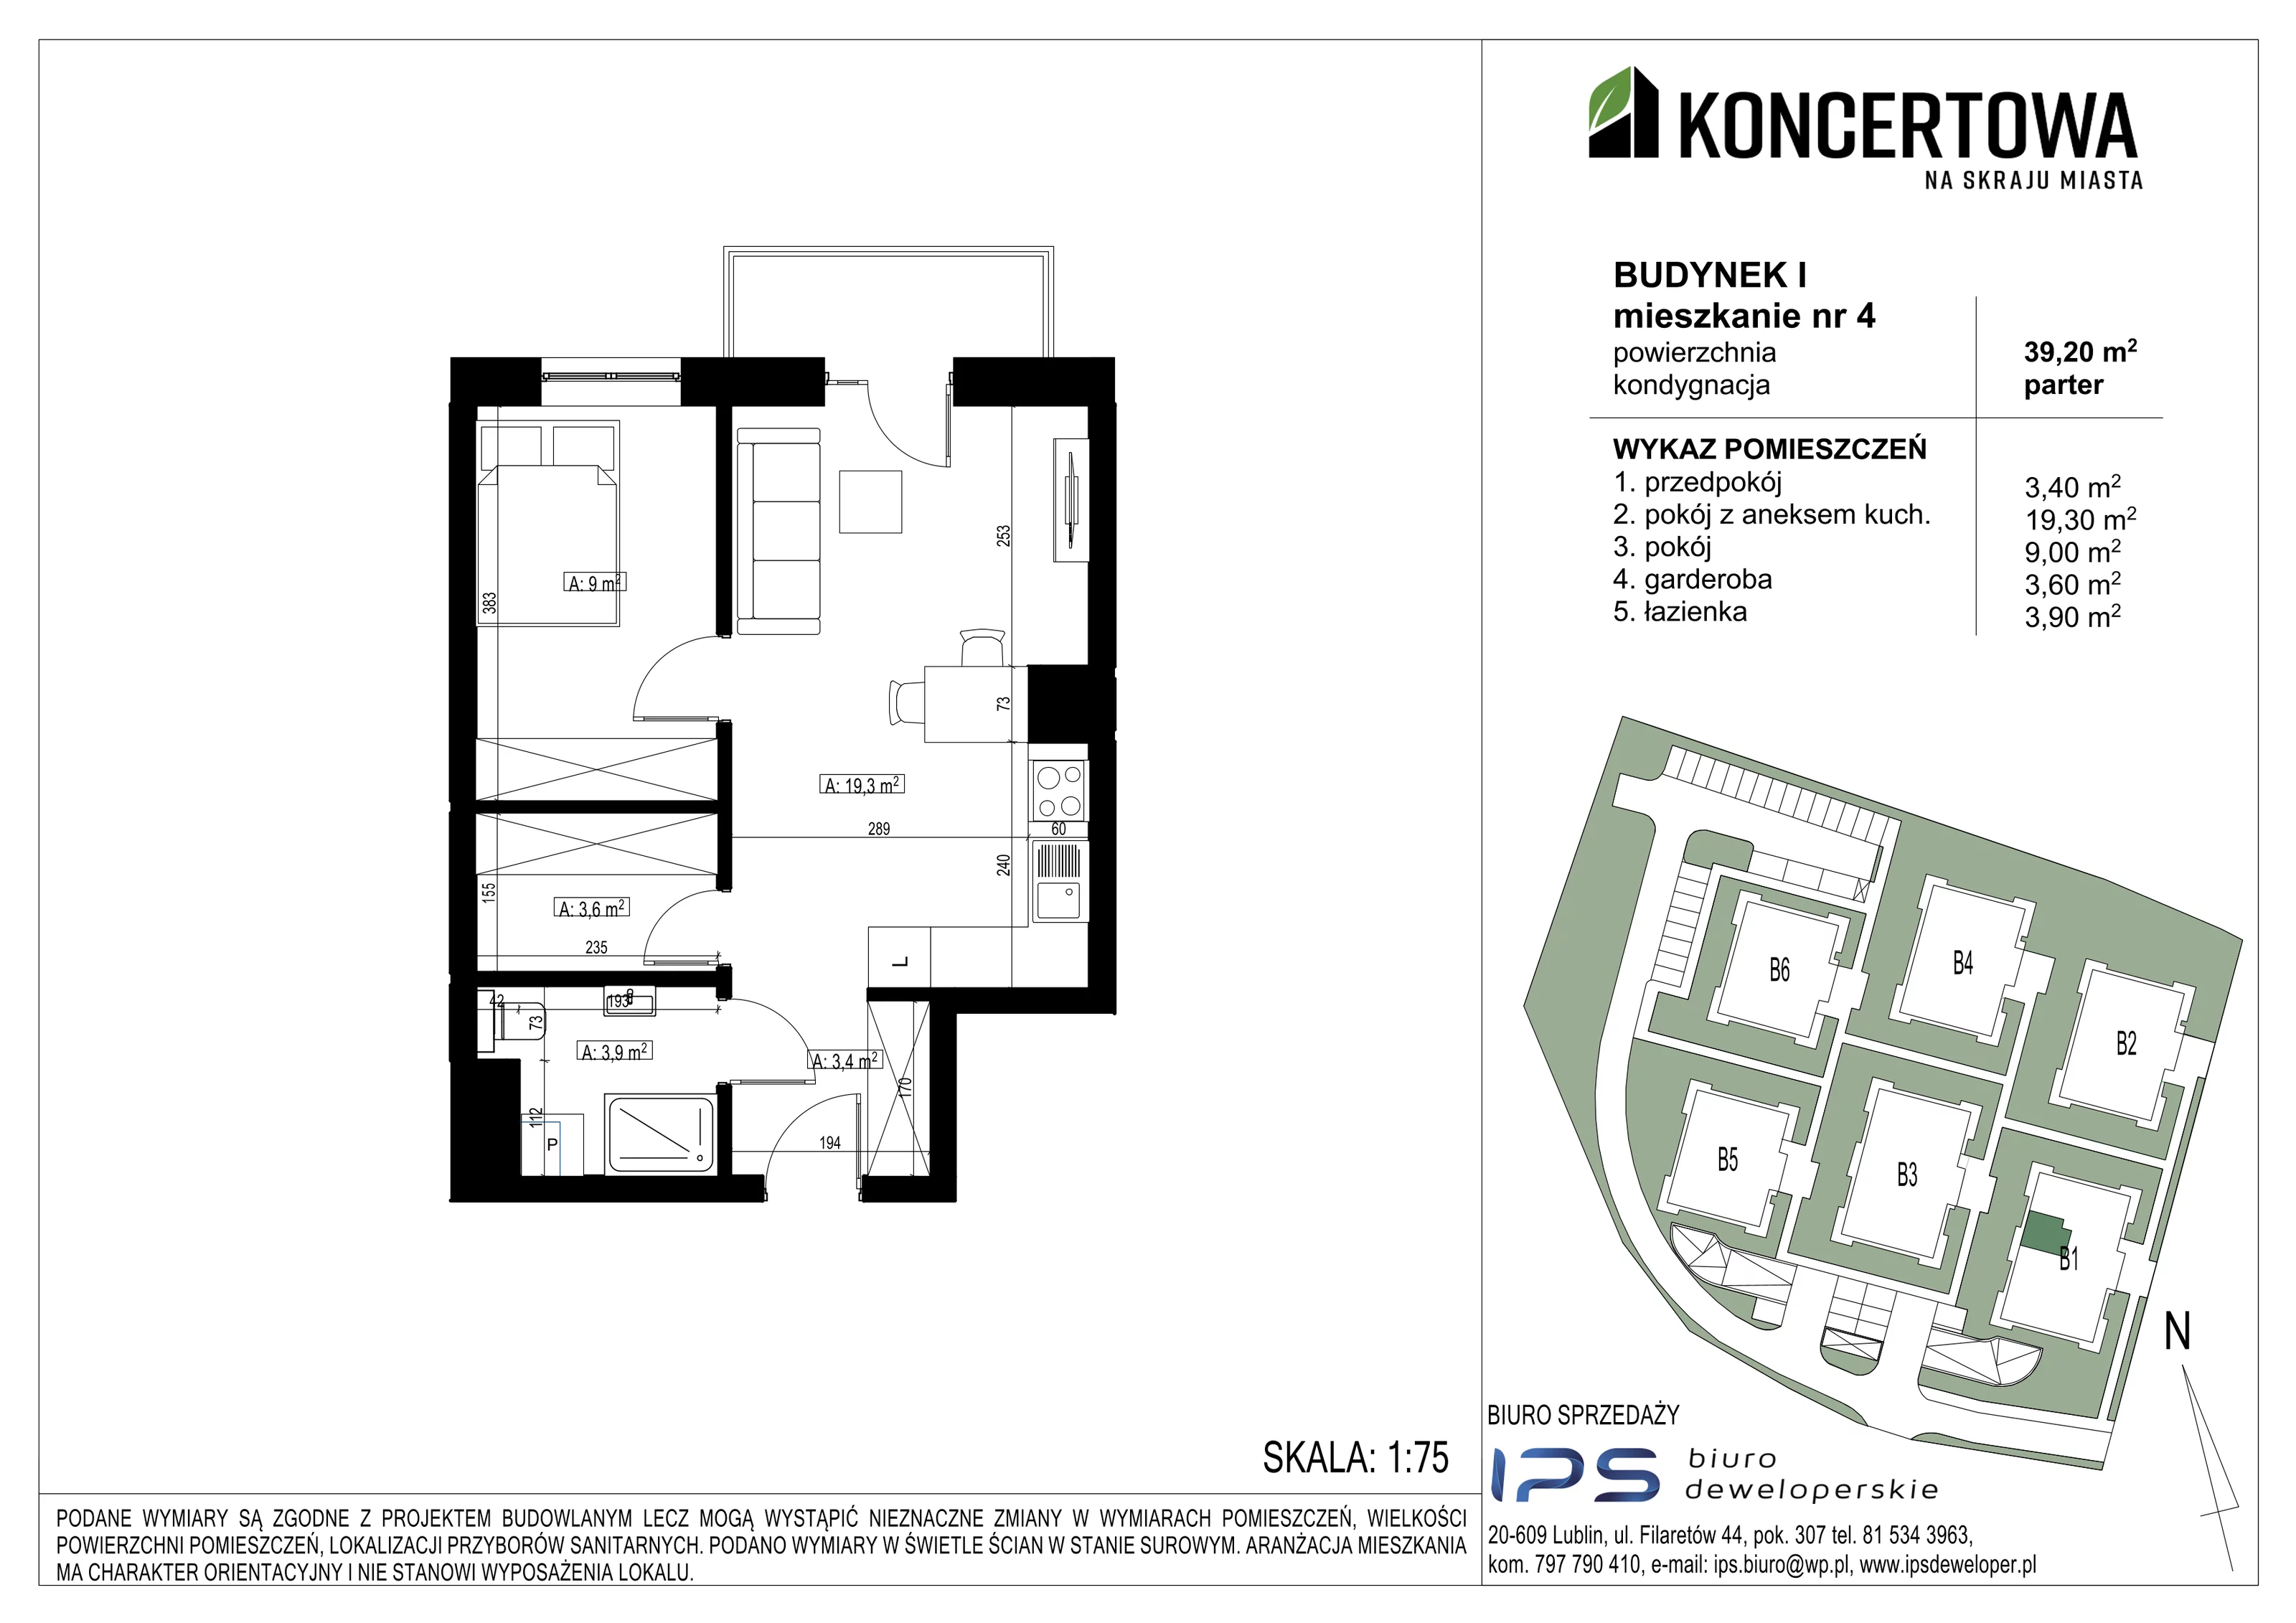 Mieszkanie 39,20 m², parter, oferta nr 2_I/4, KONCERTOWA - Na skraju miasta, Lublin, Czechów Północny, Czechów Północny,  ul. Koncertowa